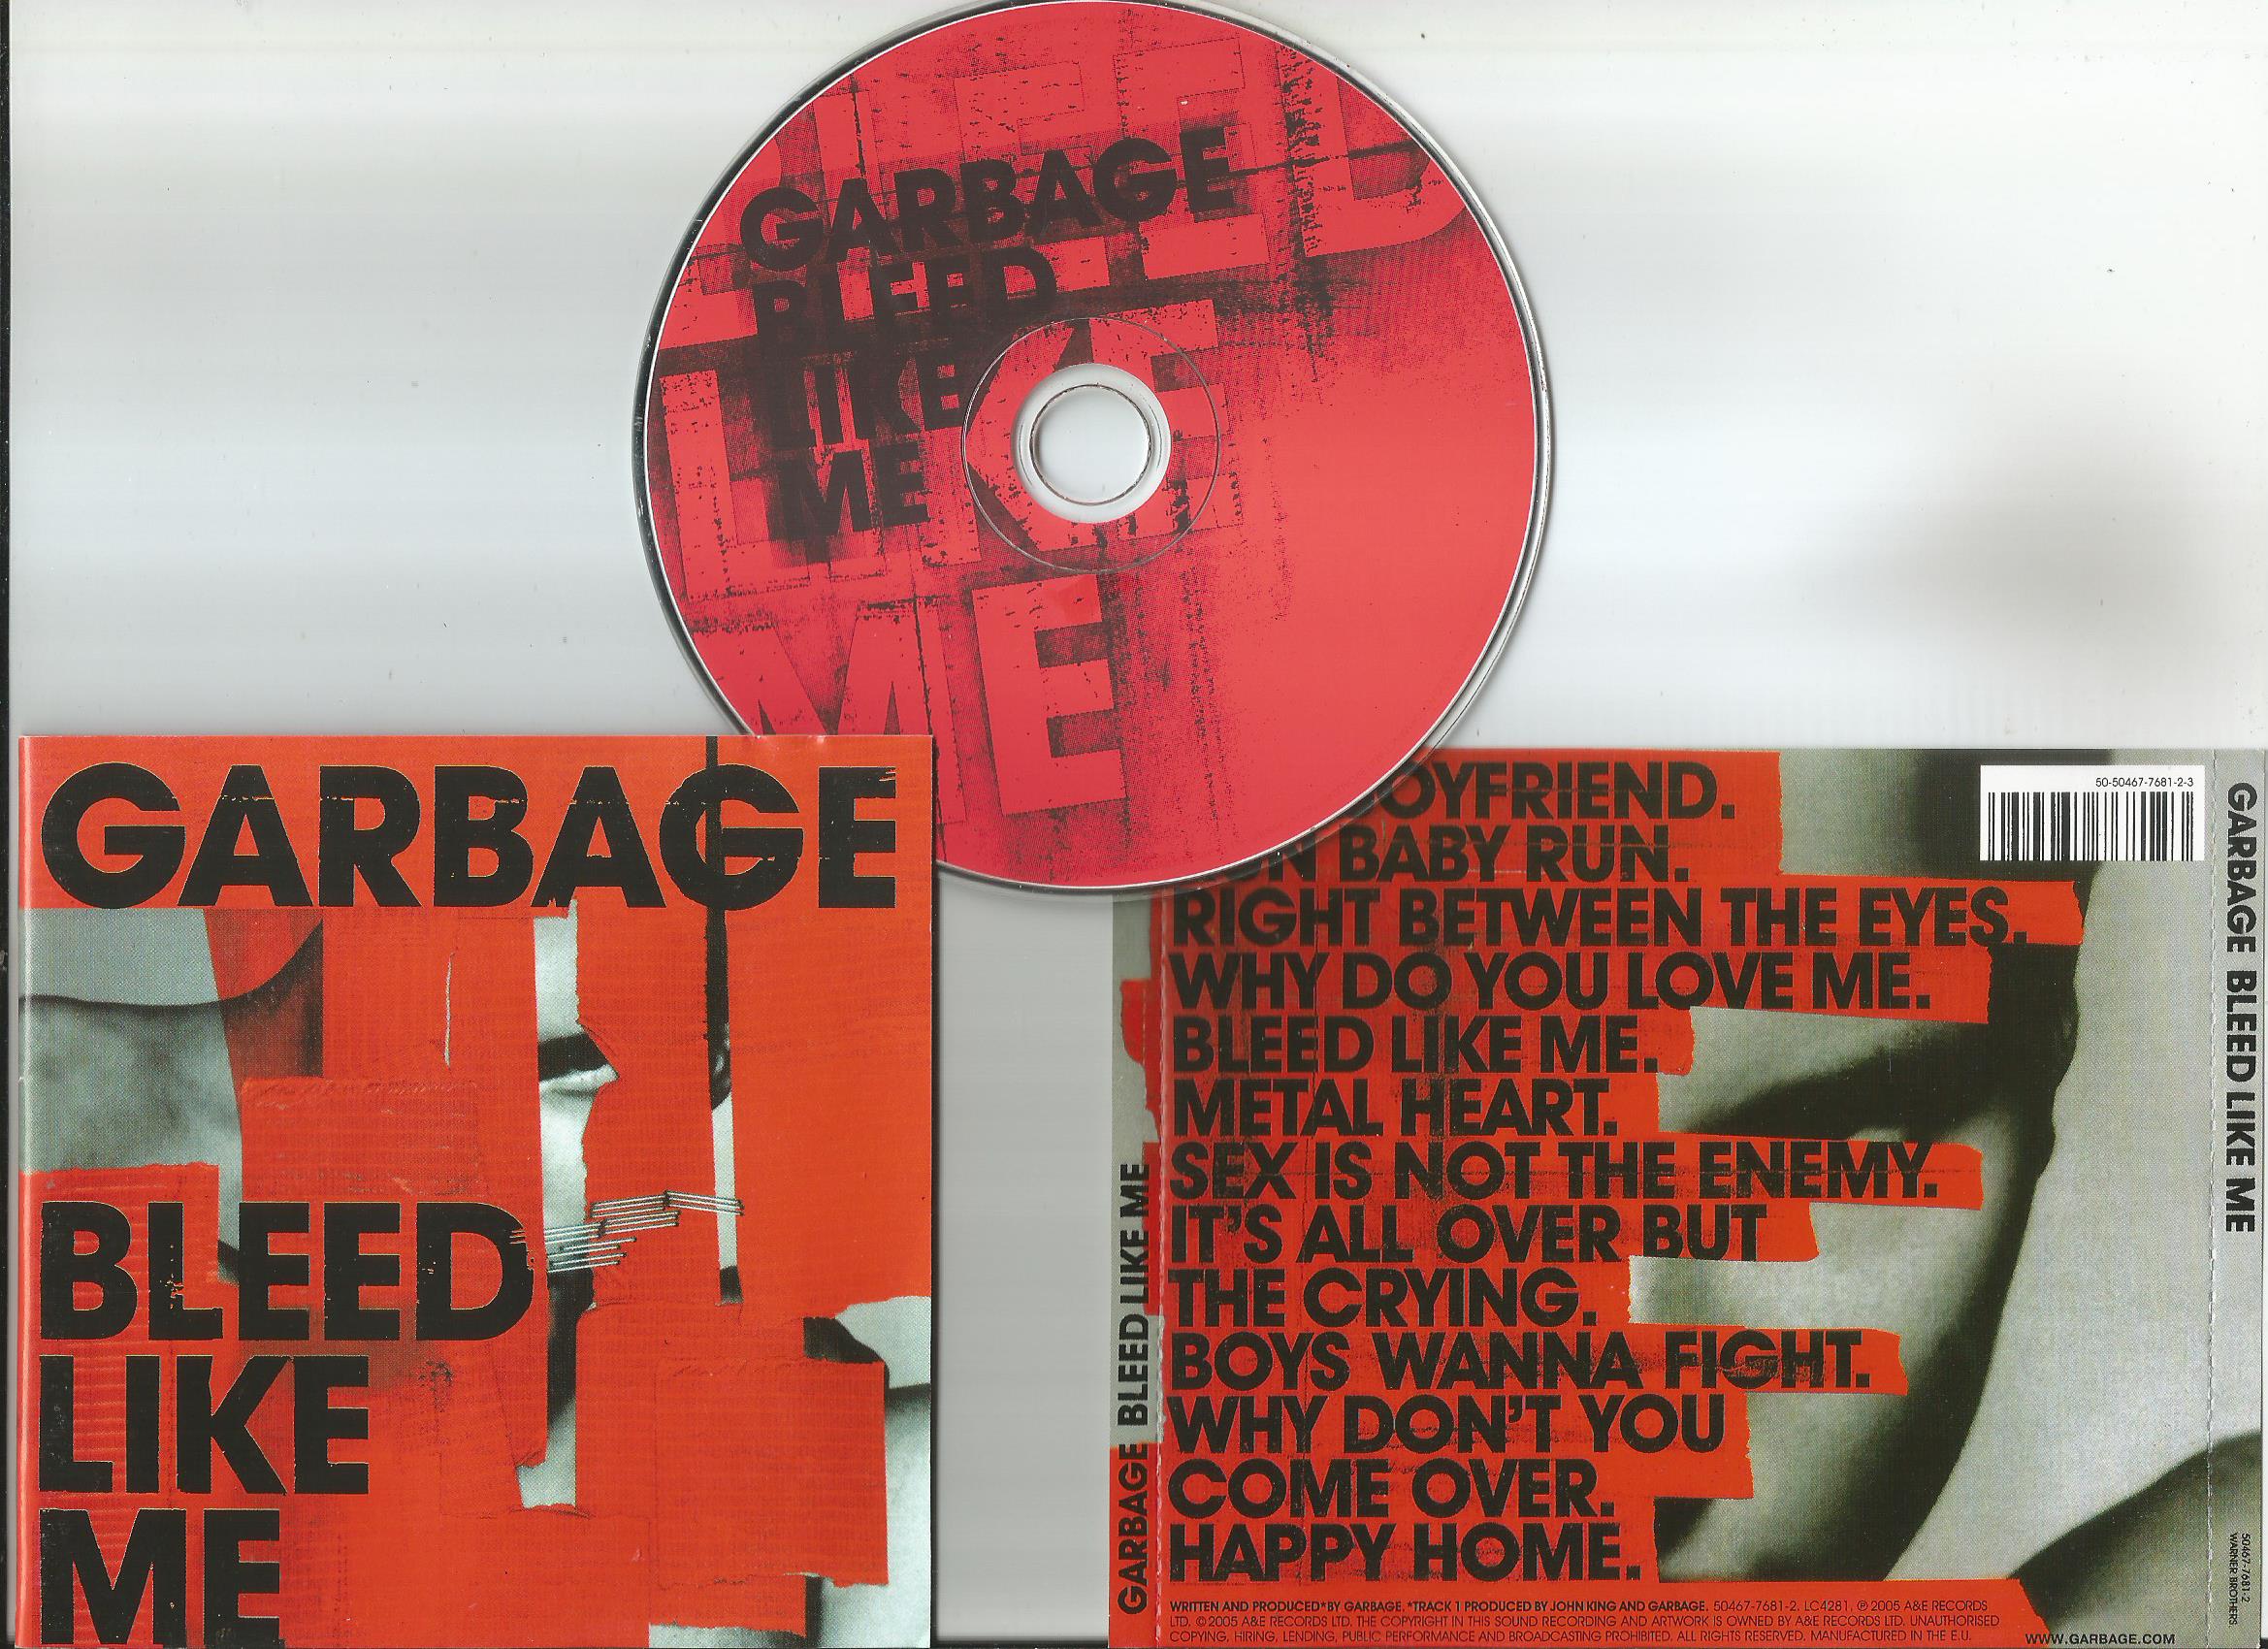 Garbage Bleed like me (Vinyl Records, LP, CD) on CDandLP